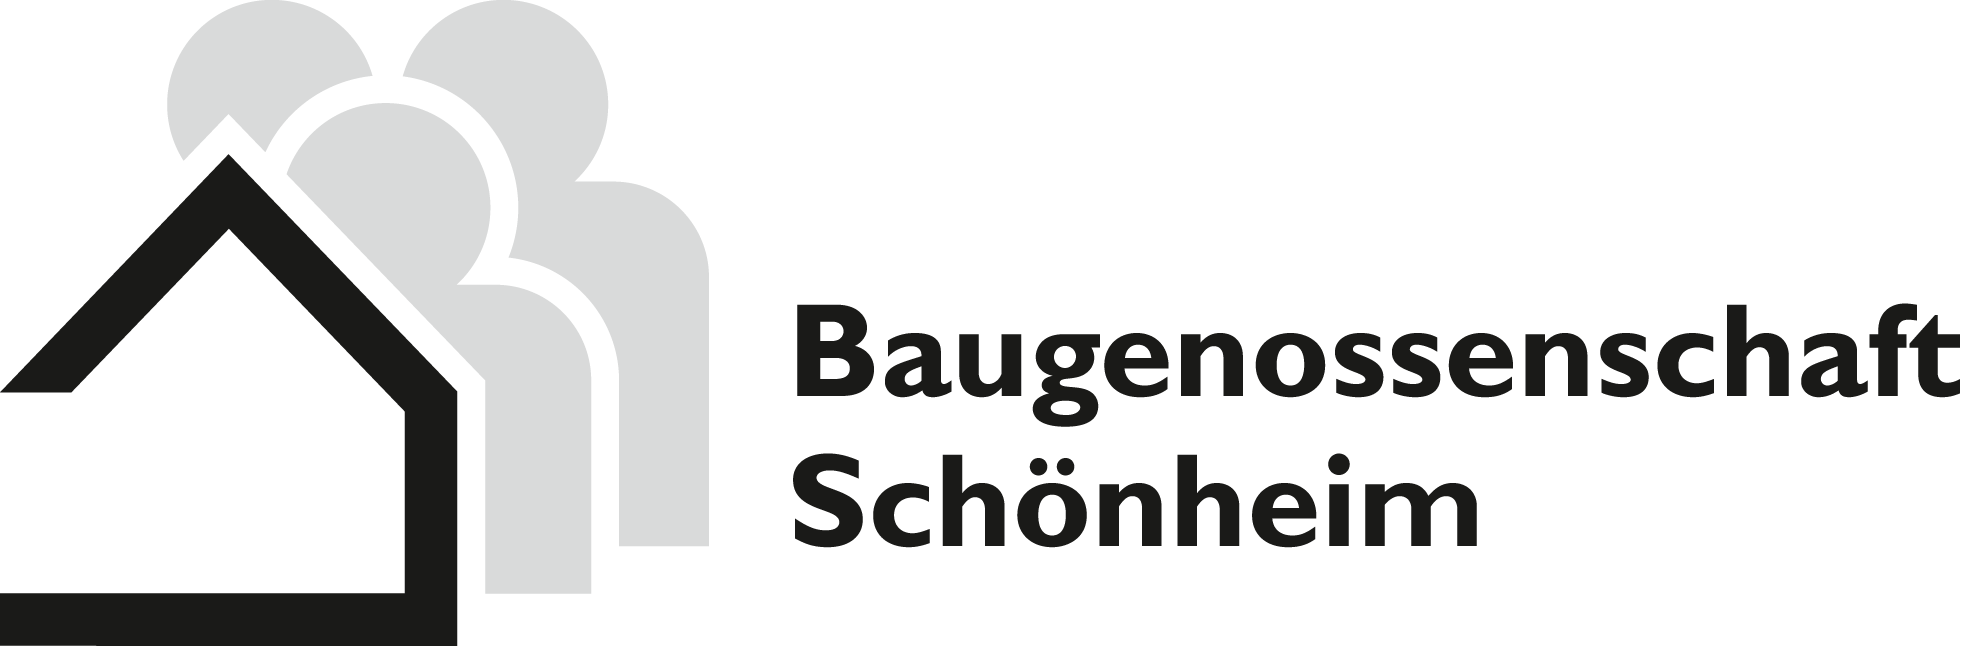 Baugenossenschaft Schönheim